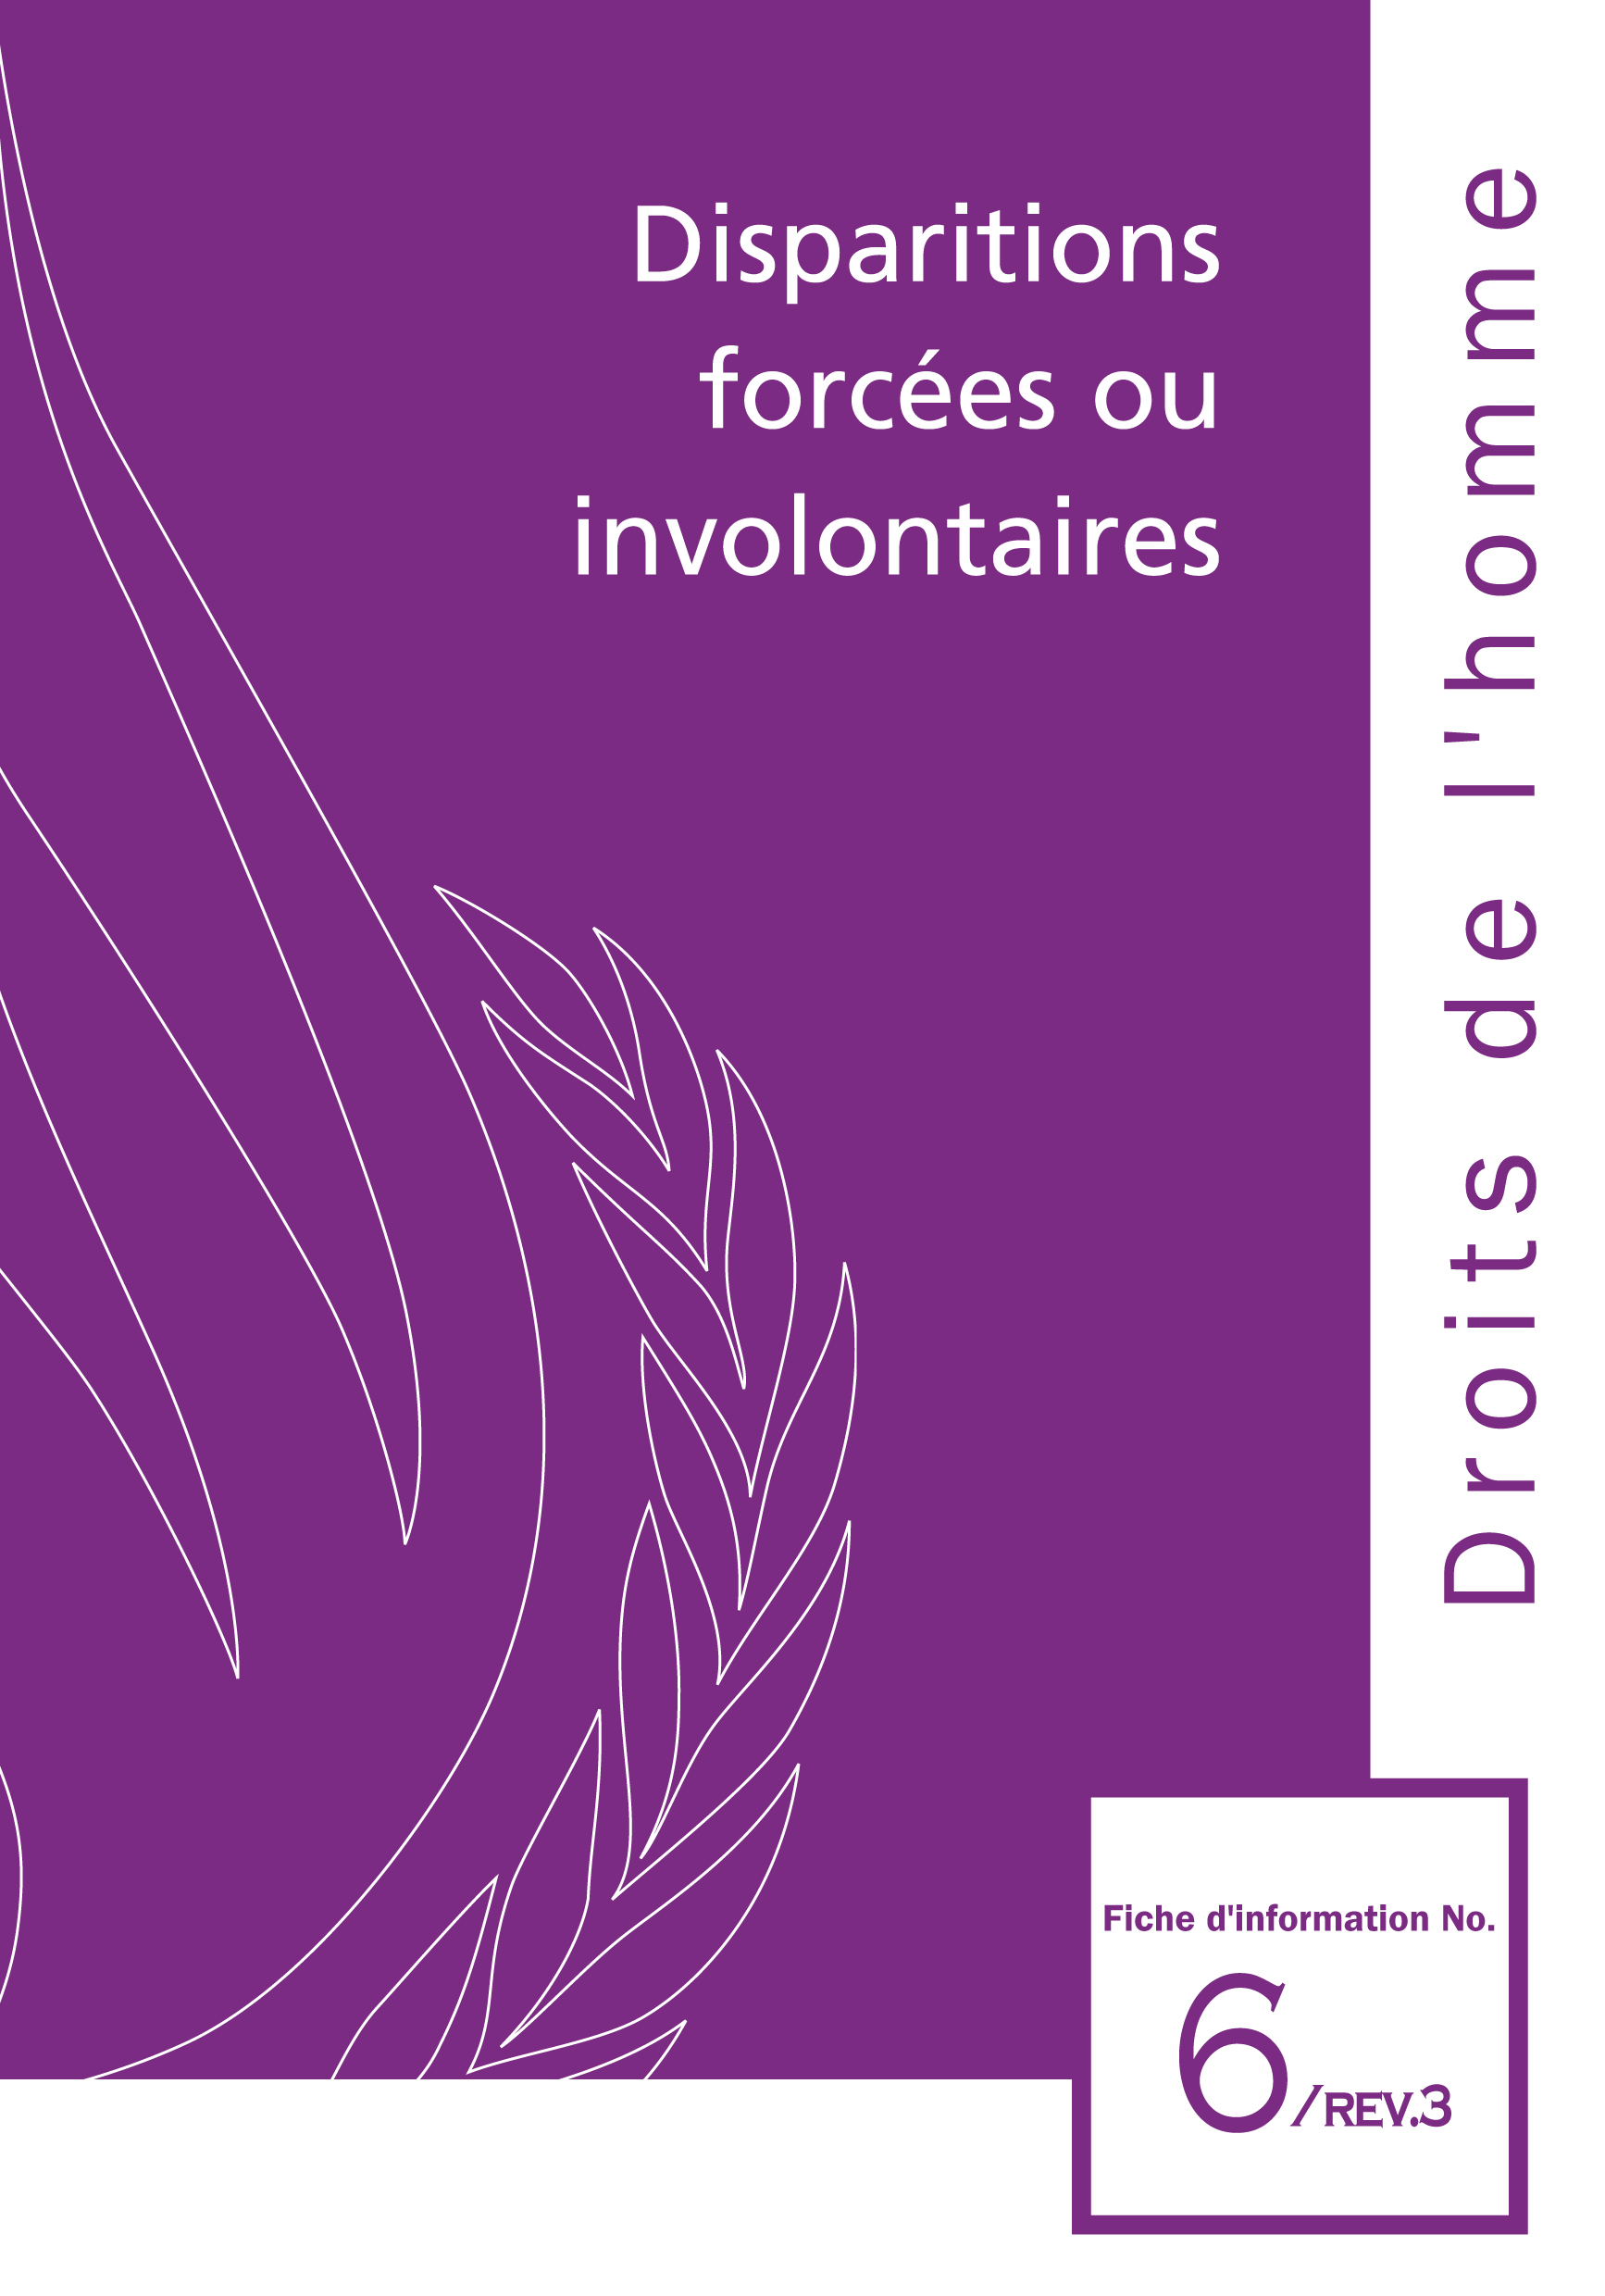 image of Droits de l'homme fiche d'information No. 6, Rev. 3